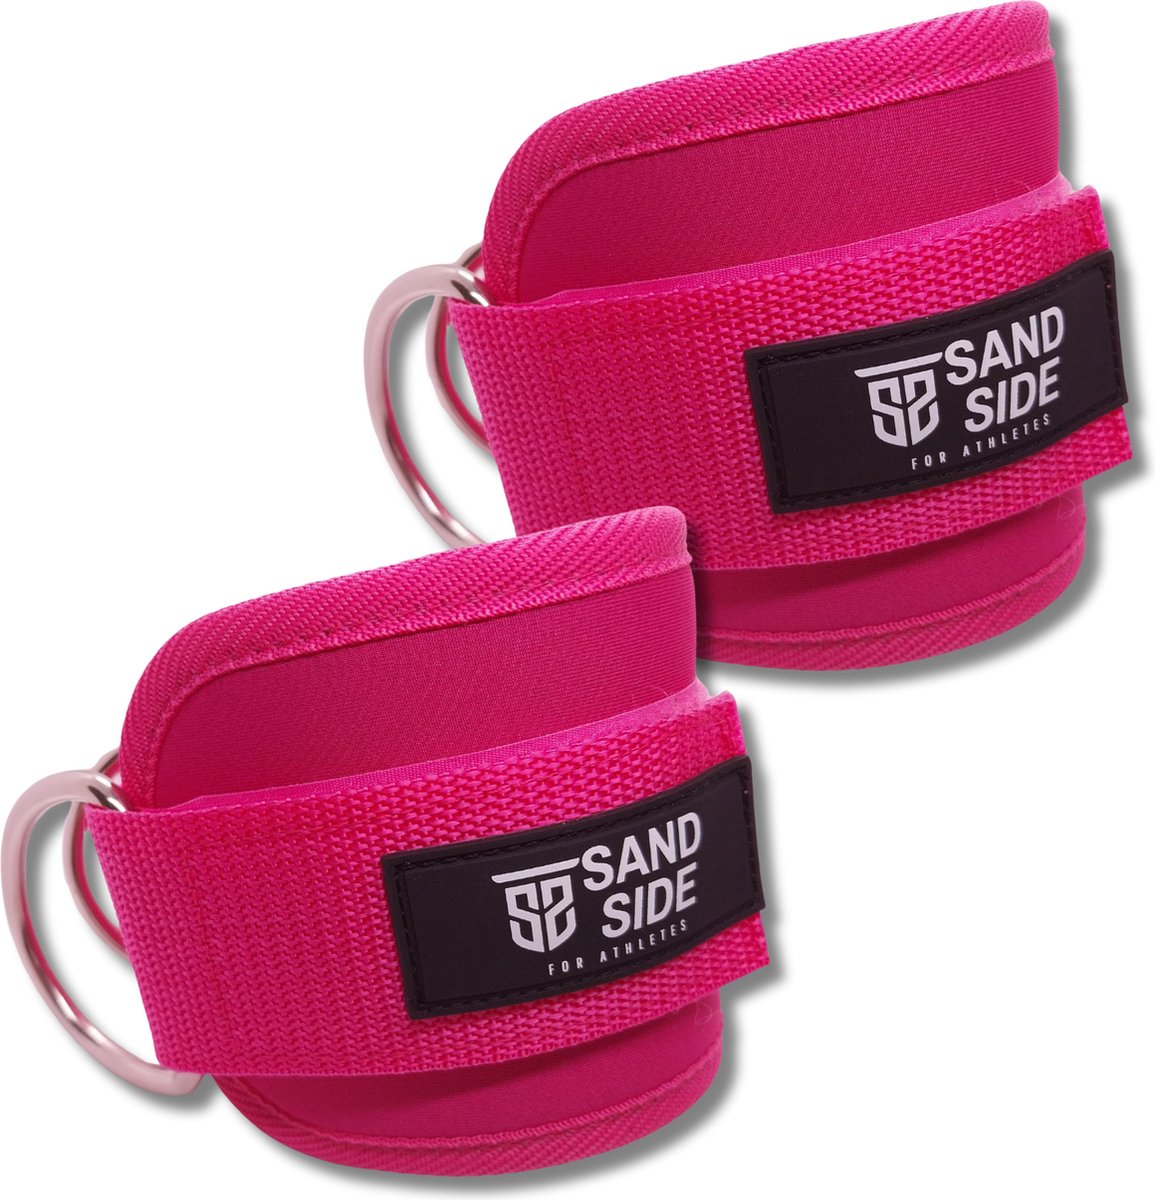 Sandside - Ankle Strap - Enkelband Fitness - Ankle Strap Fitness - Beentrainer - Roze - 2 Stuks met Opbergzakje